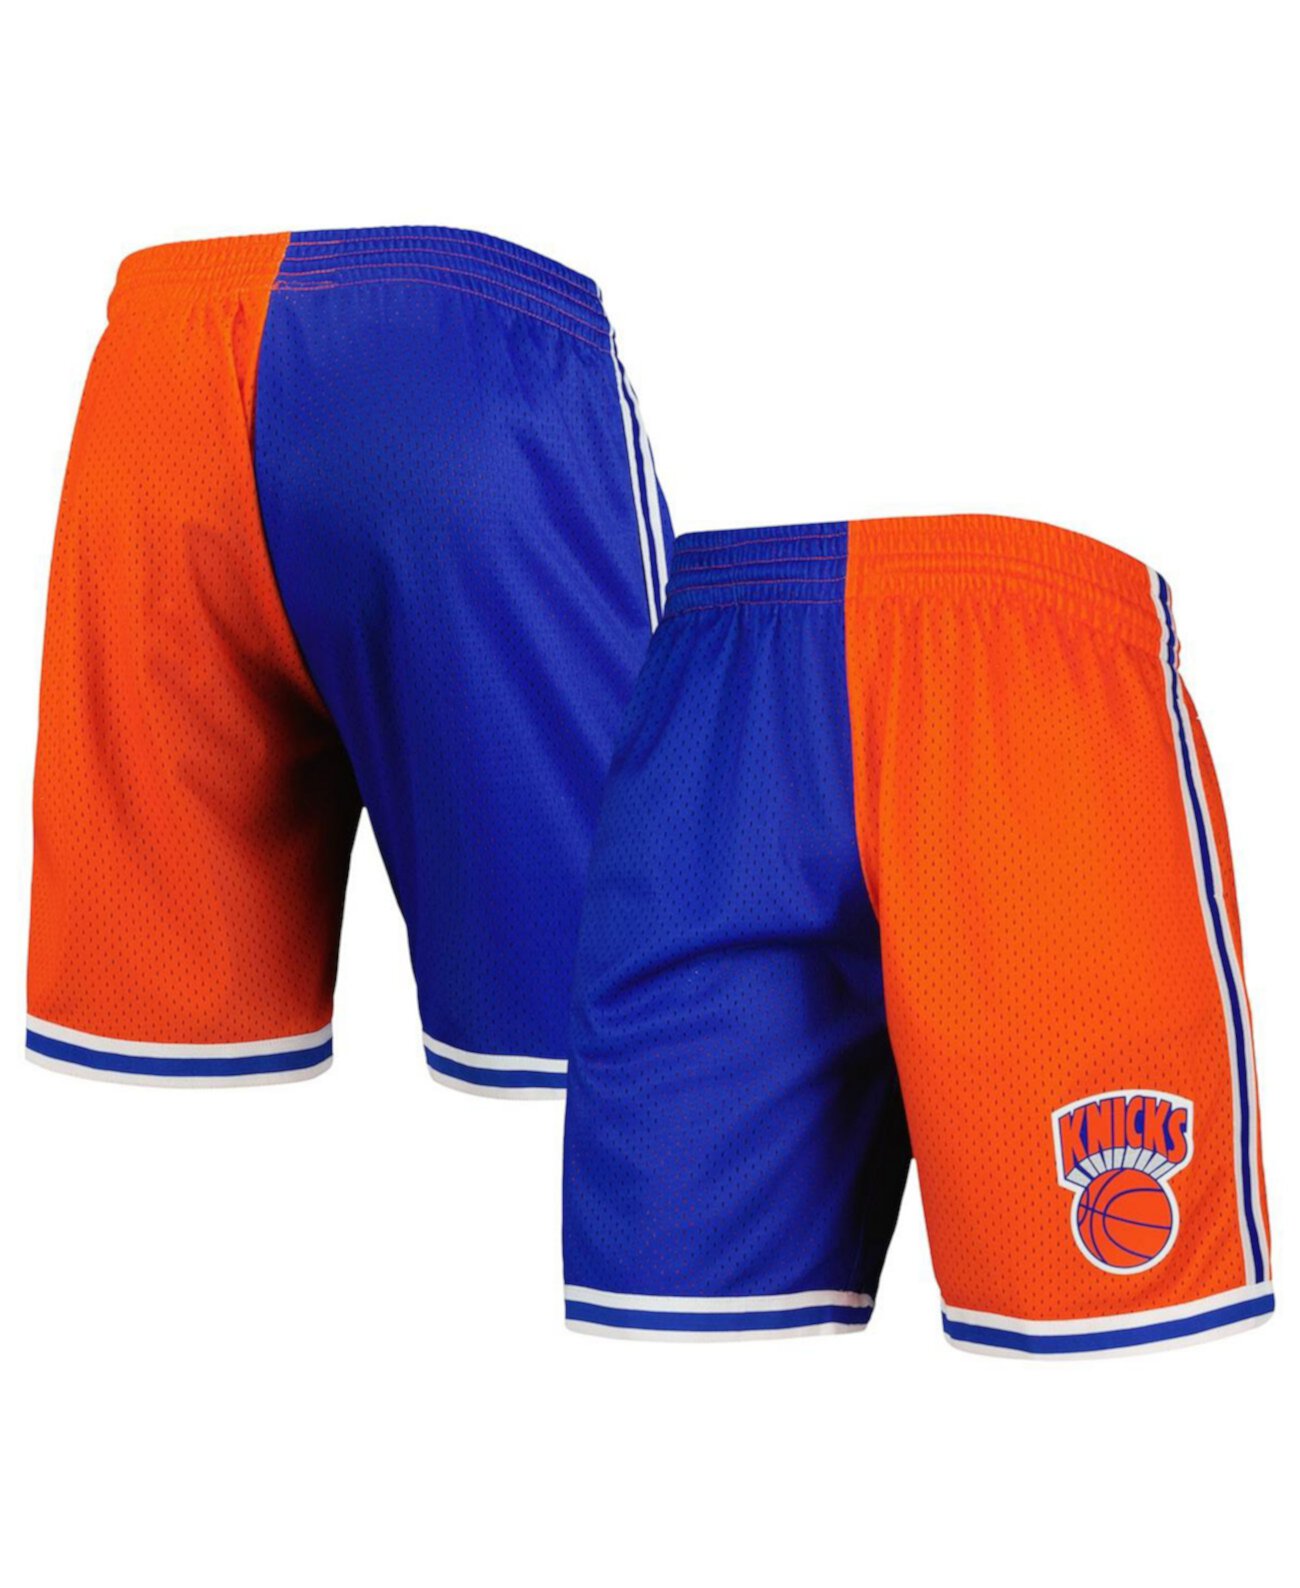 Мужские синие и оранжевые шорты New York Knicks Hardwood Classics 1991 с разрезом Swingman Mitchell & Ness